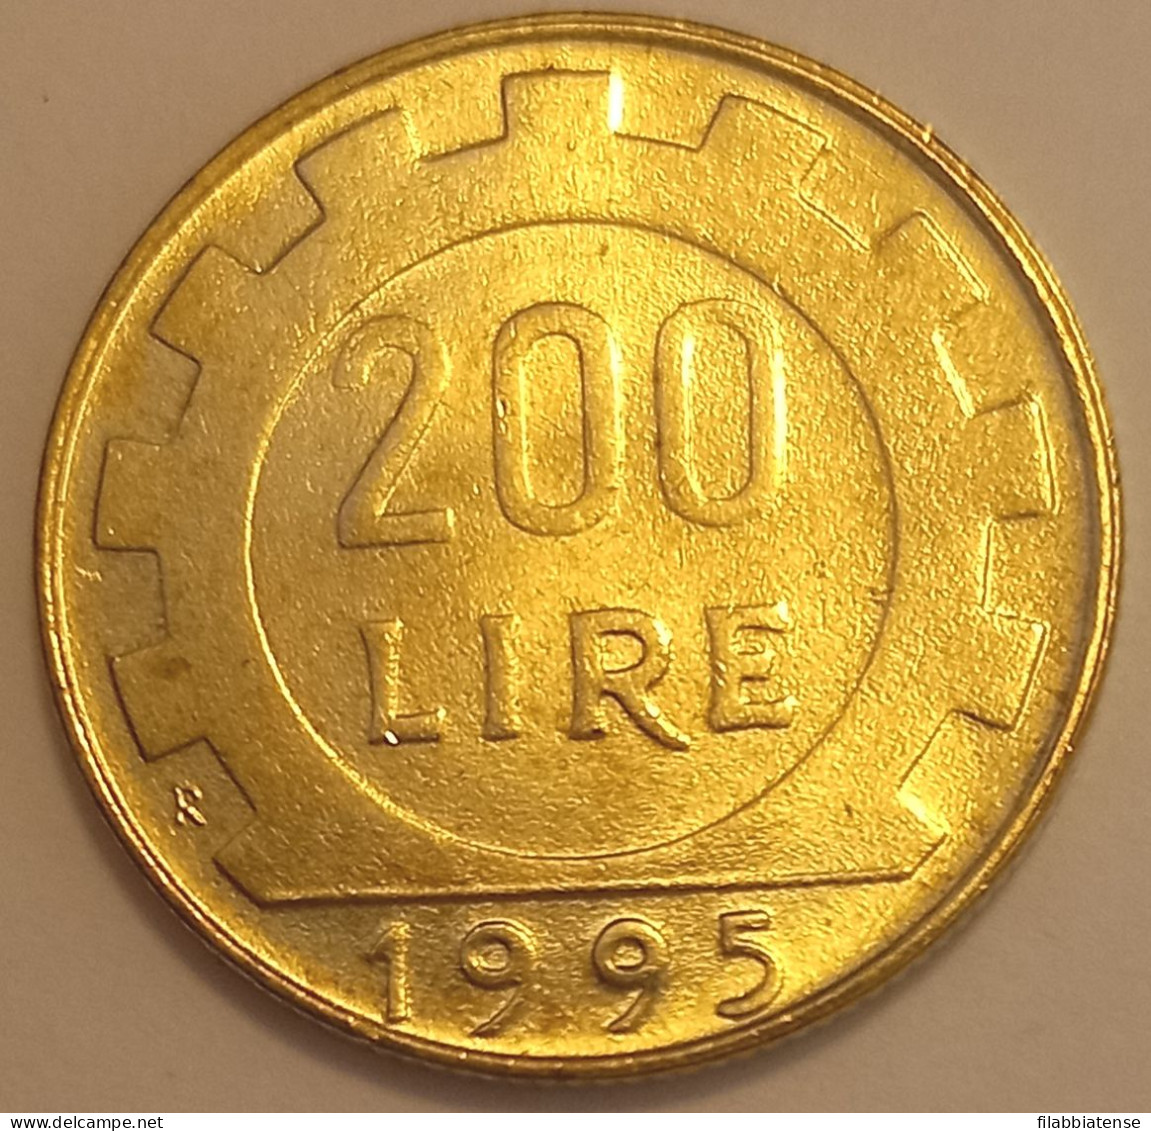 1995 - Italia 200 Lire     ------- - 200 Liras